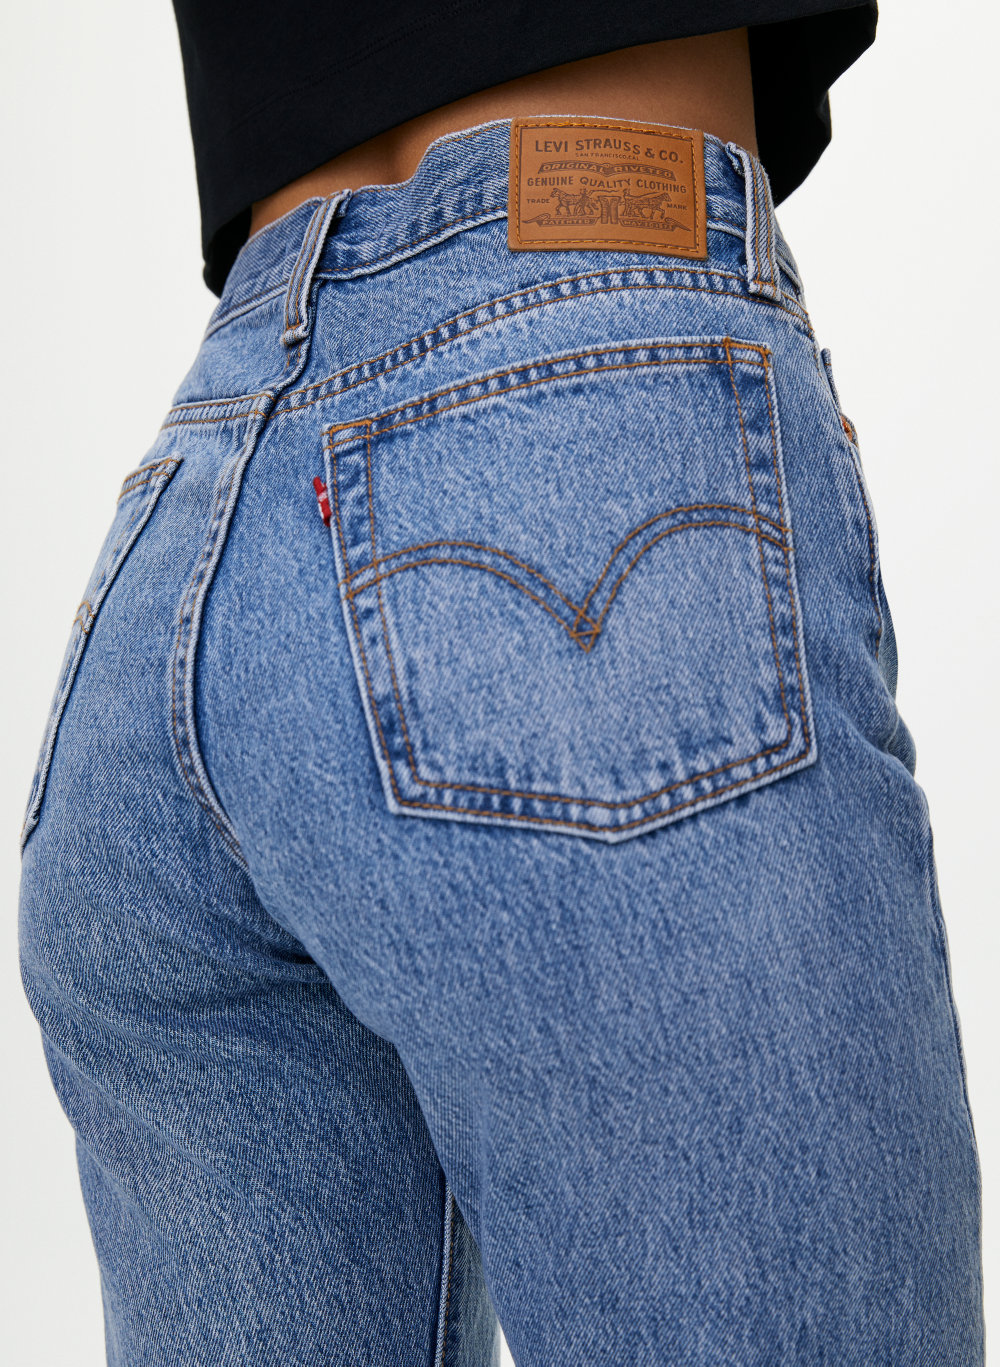 levis jeans aritzia